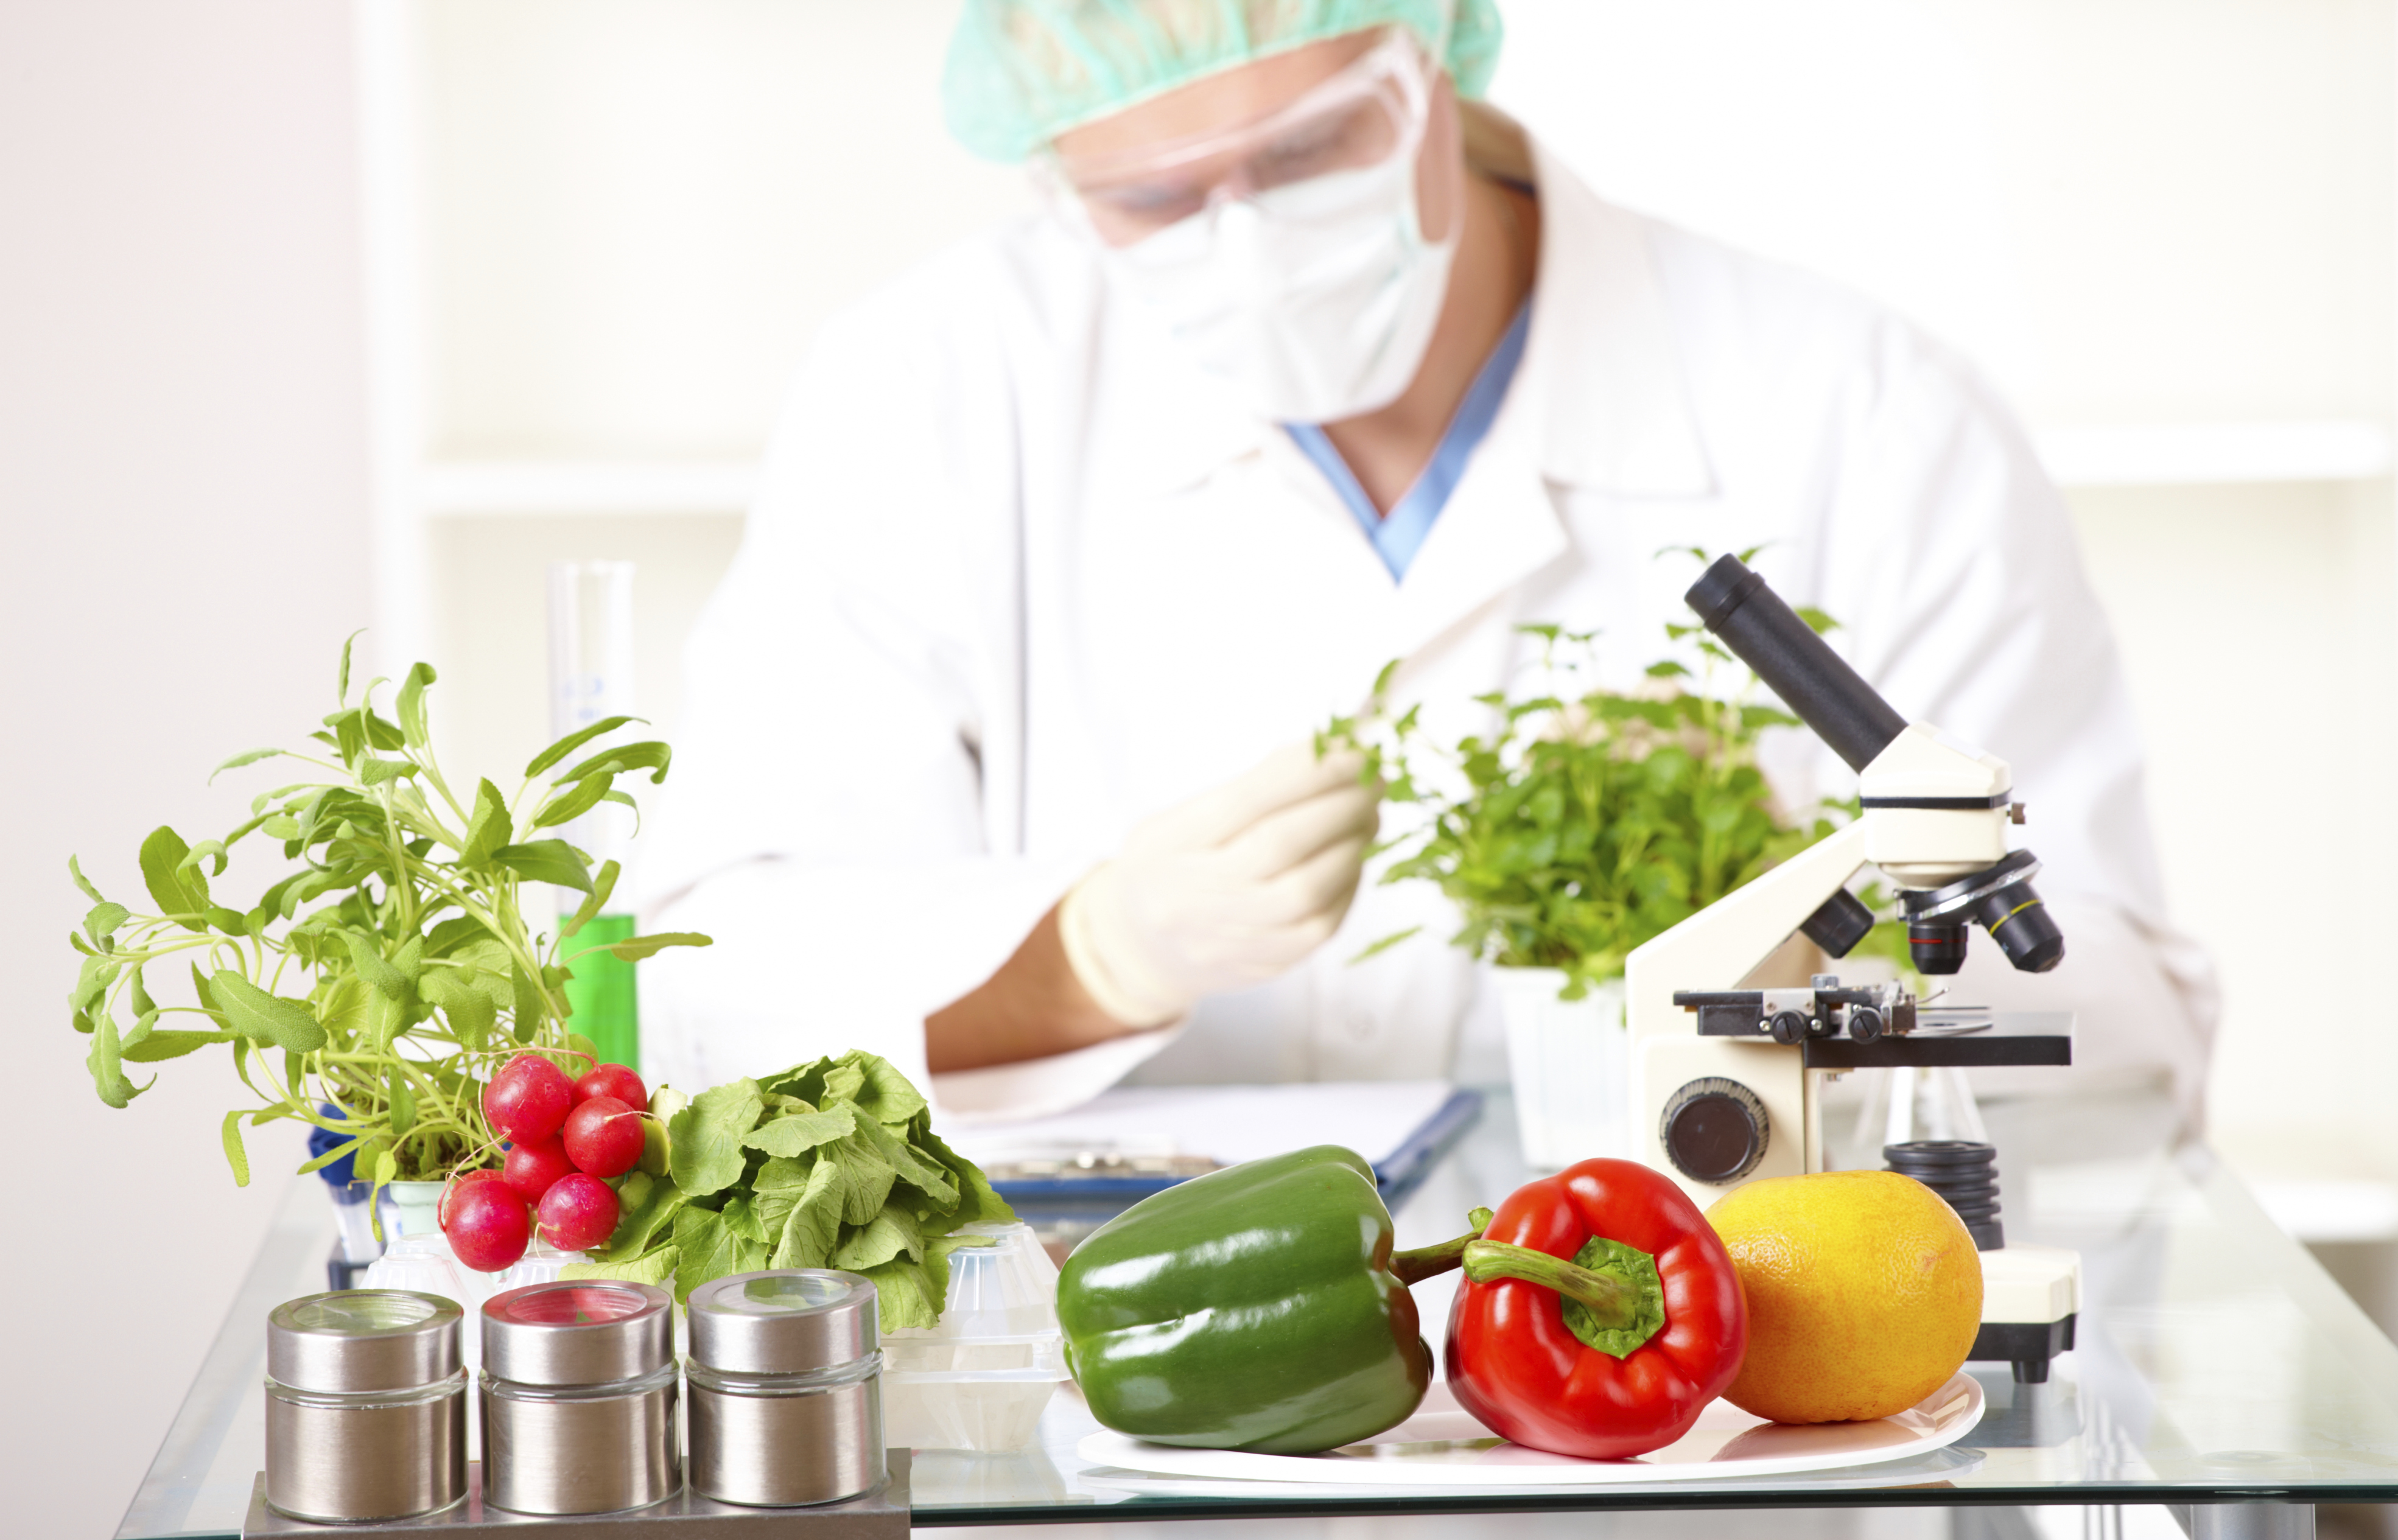 Безопасность продовольственных продуктов. Биотехнология пищевых продуктов. Экспертиза овощей. Безопасность пищевых продуктов. Инженерия пищевых продуктов.